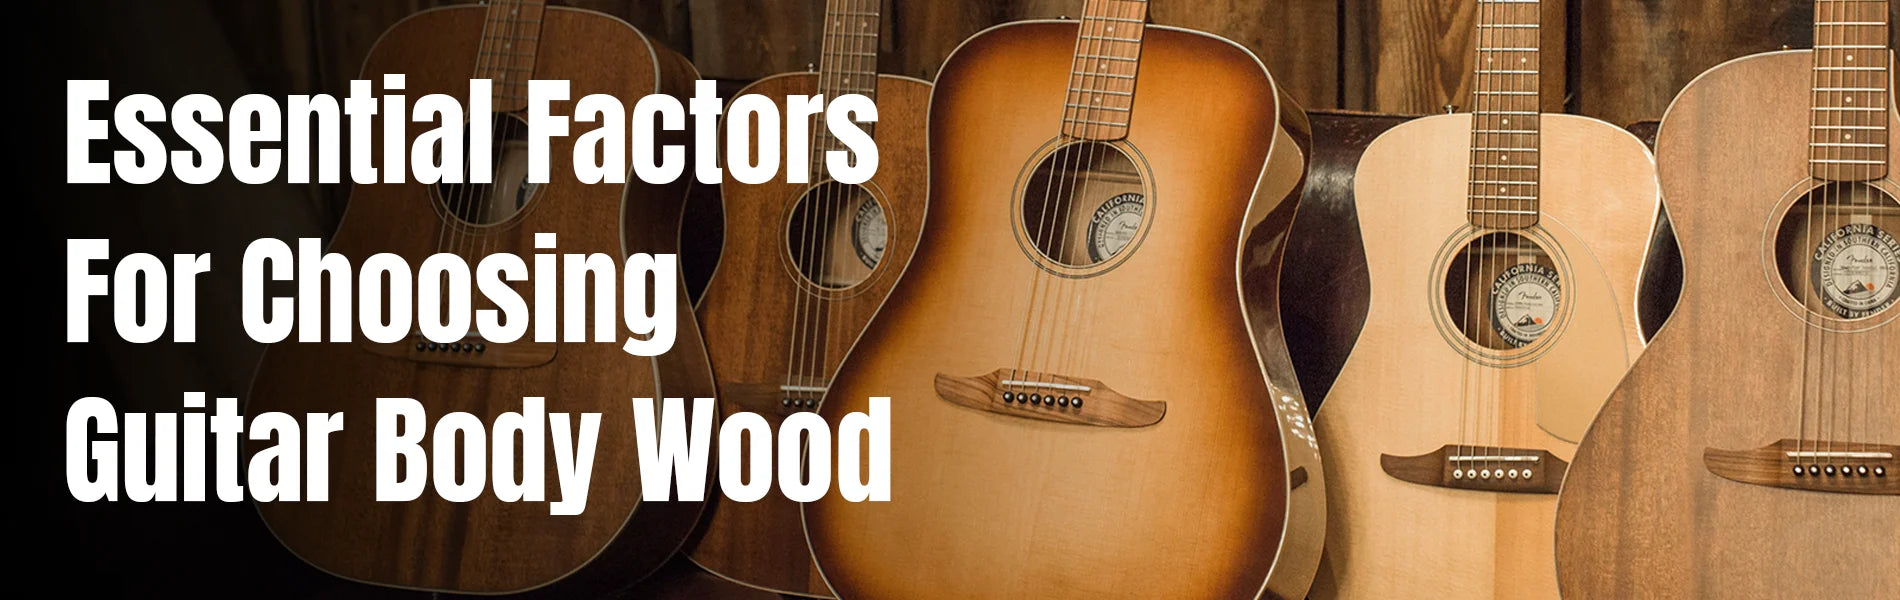 Essential Factors for Choosing Guitar Body Wood